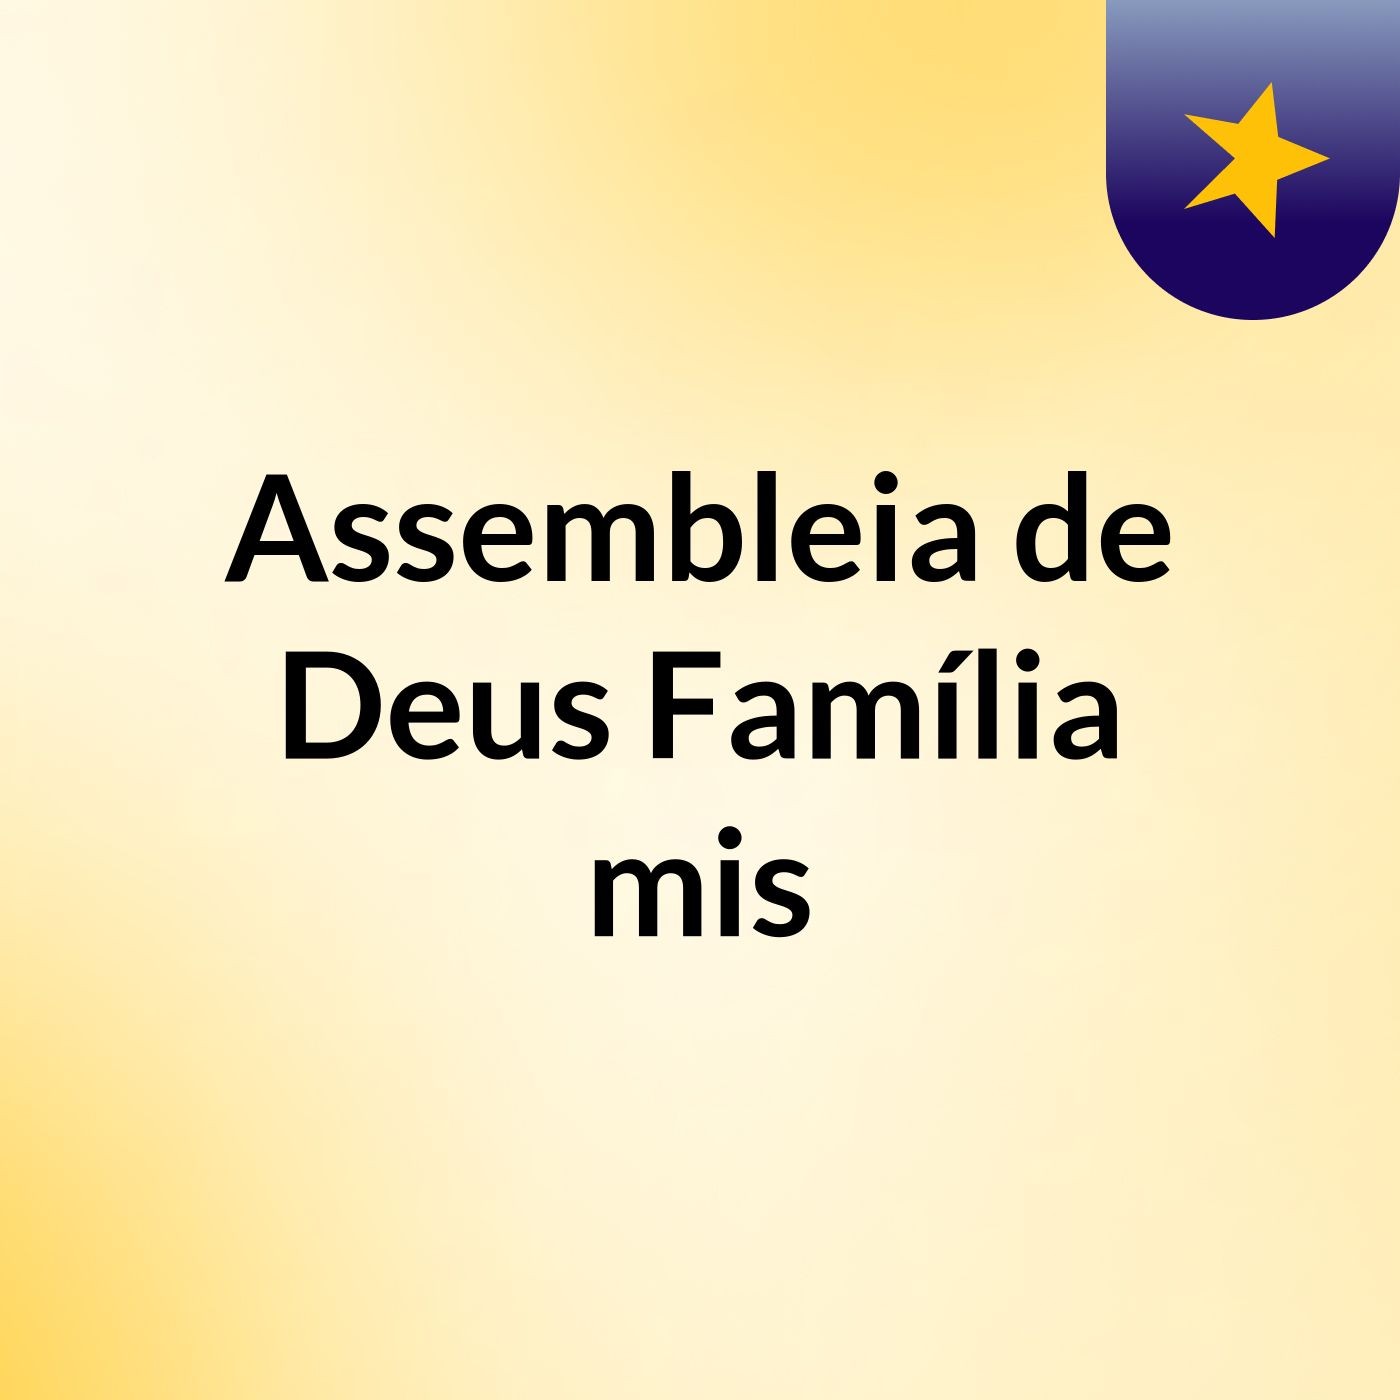 Assembleia de Deus Família mis'